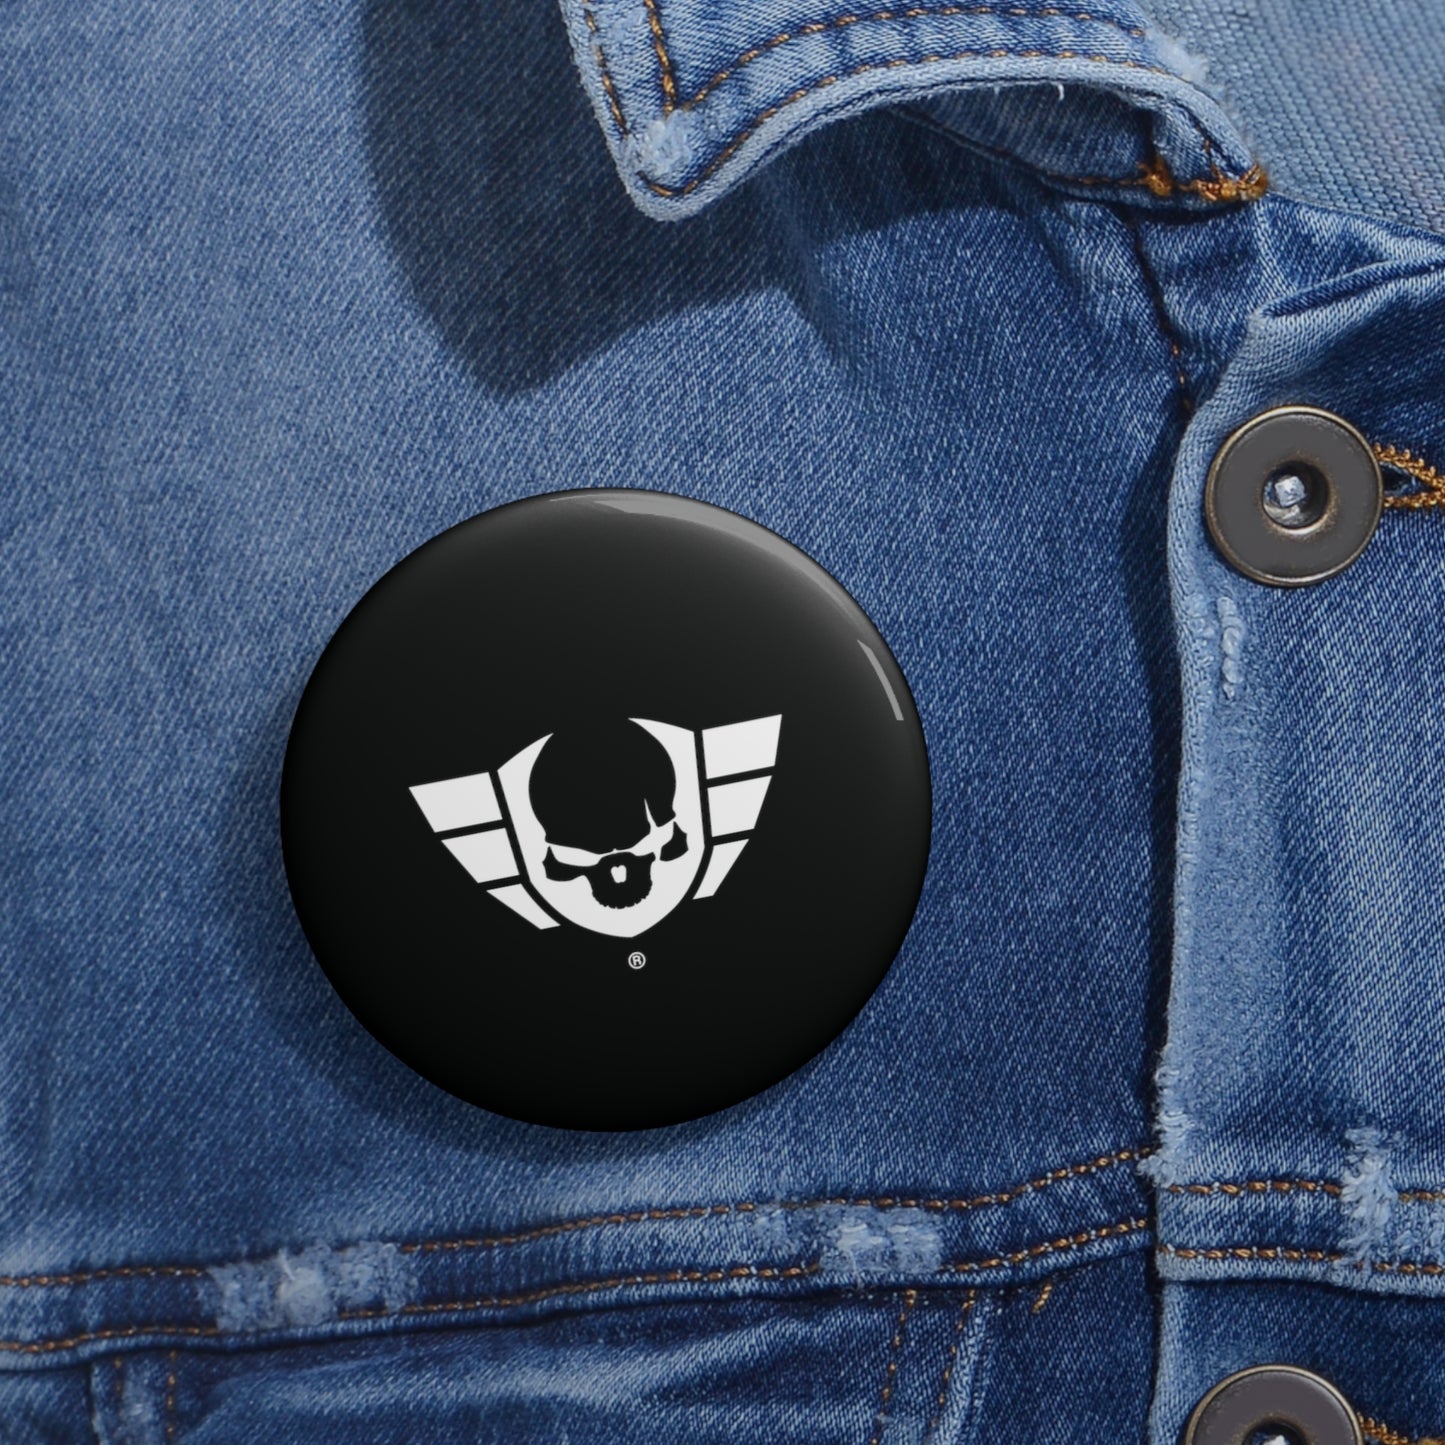 Warsaken® Button Pin : Black